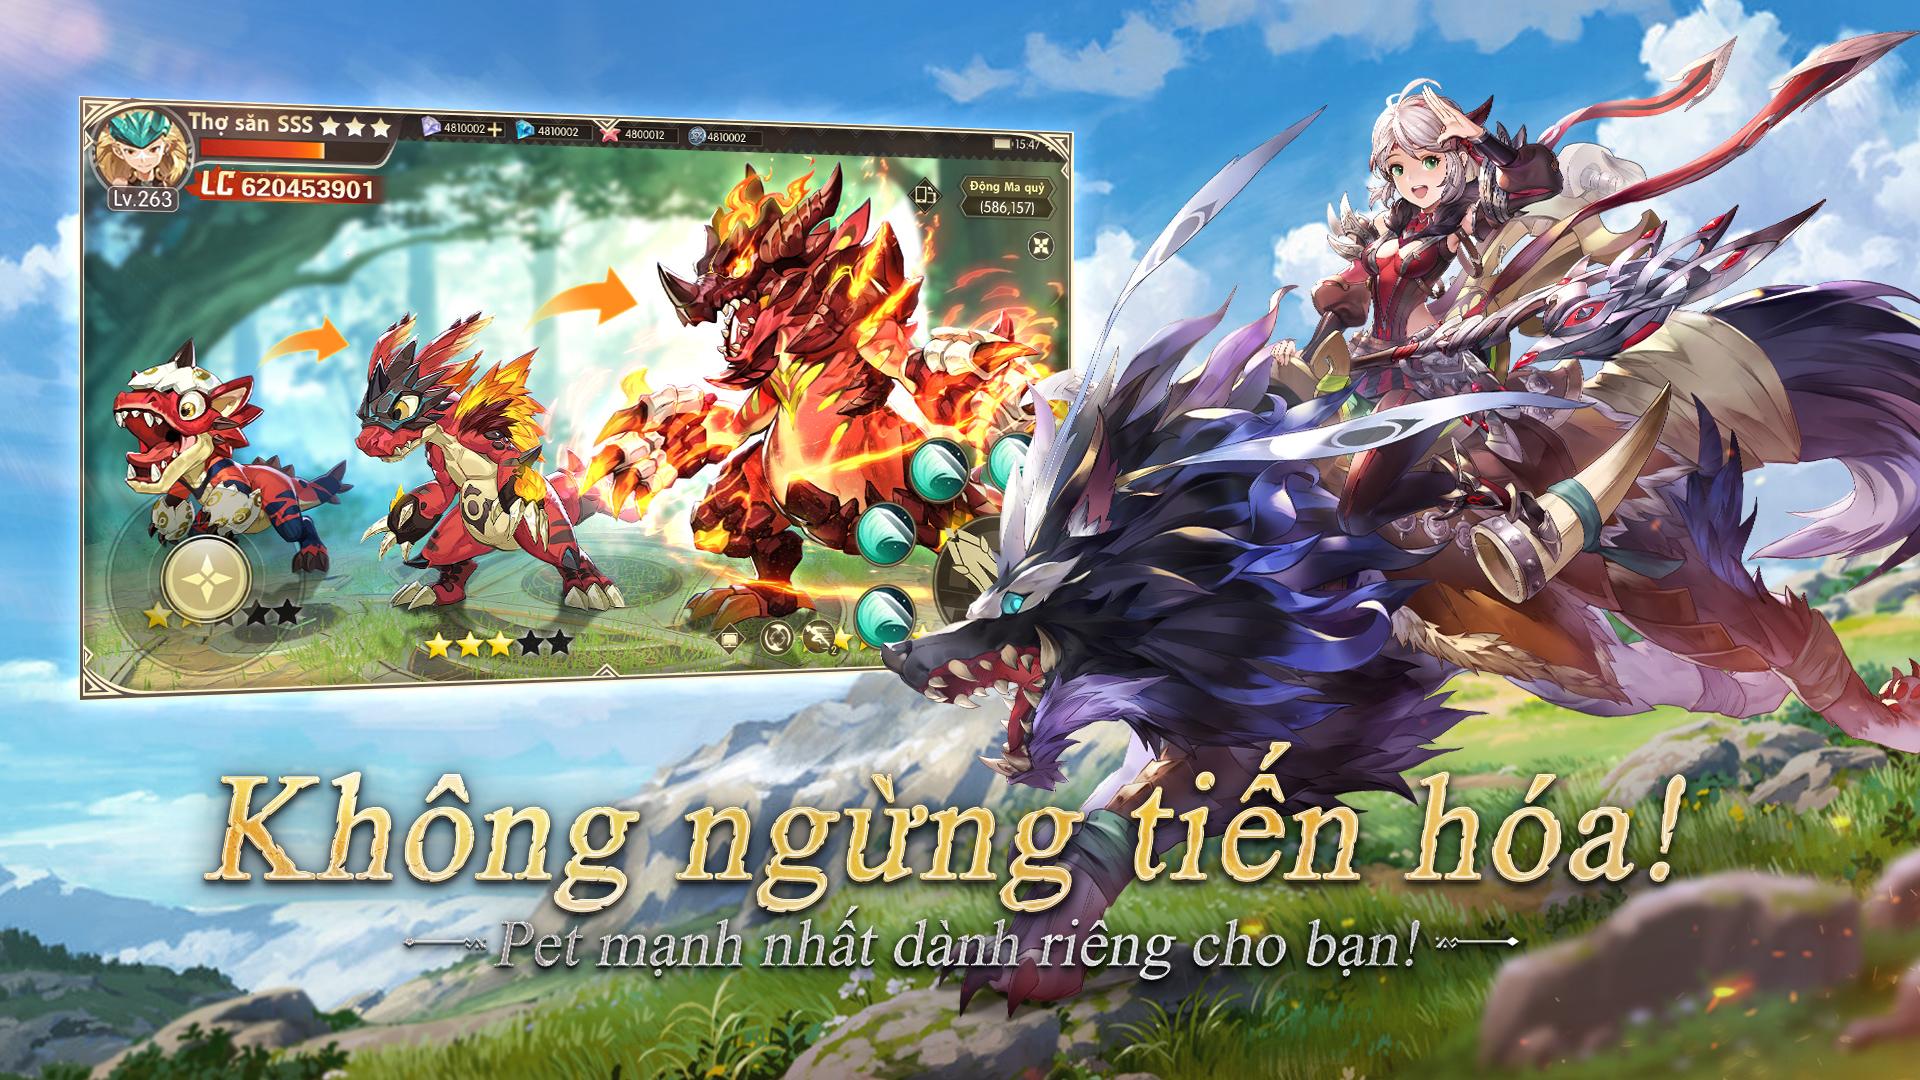 Dragon Hunters – Game mobile phiêu lưu mạo hiểm sắp được phát hành tại Việt Nam